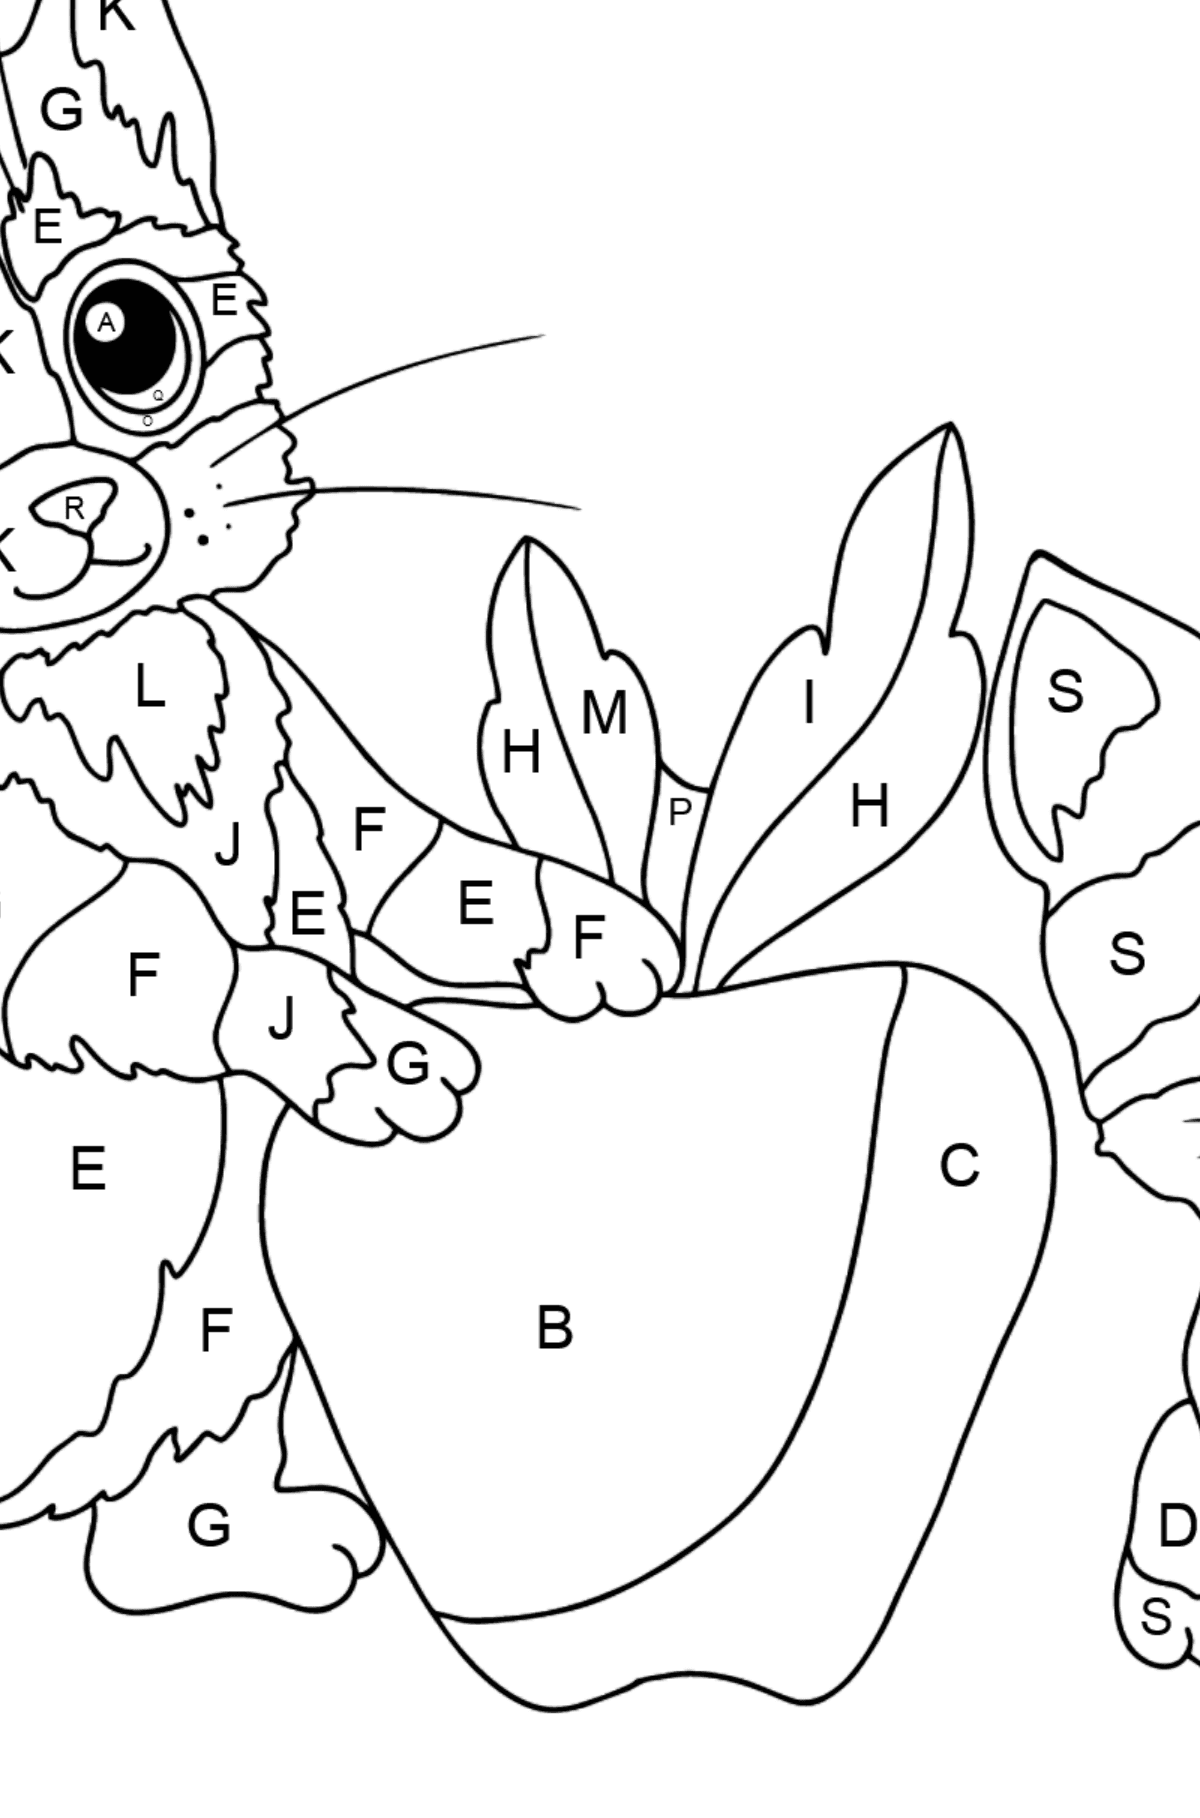 Coloriage - Petits chatons - Coloriage par Lettres pour les Enfants